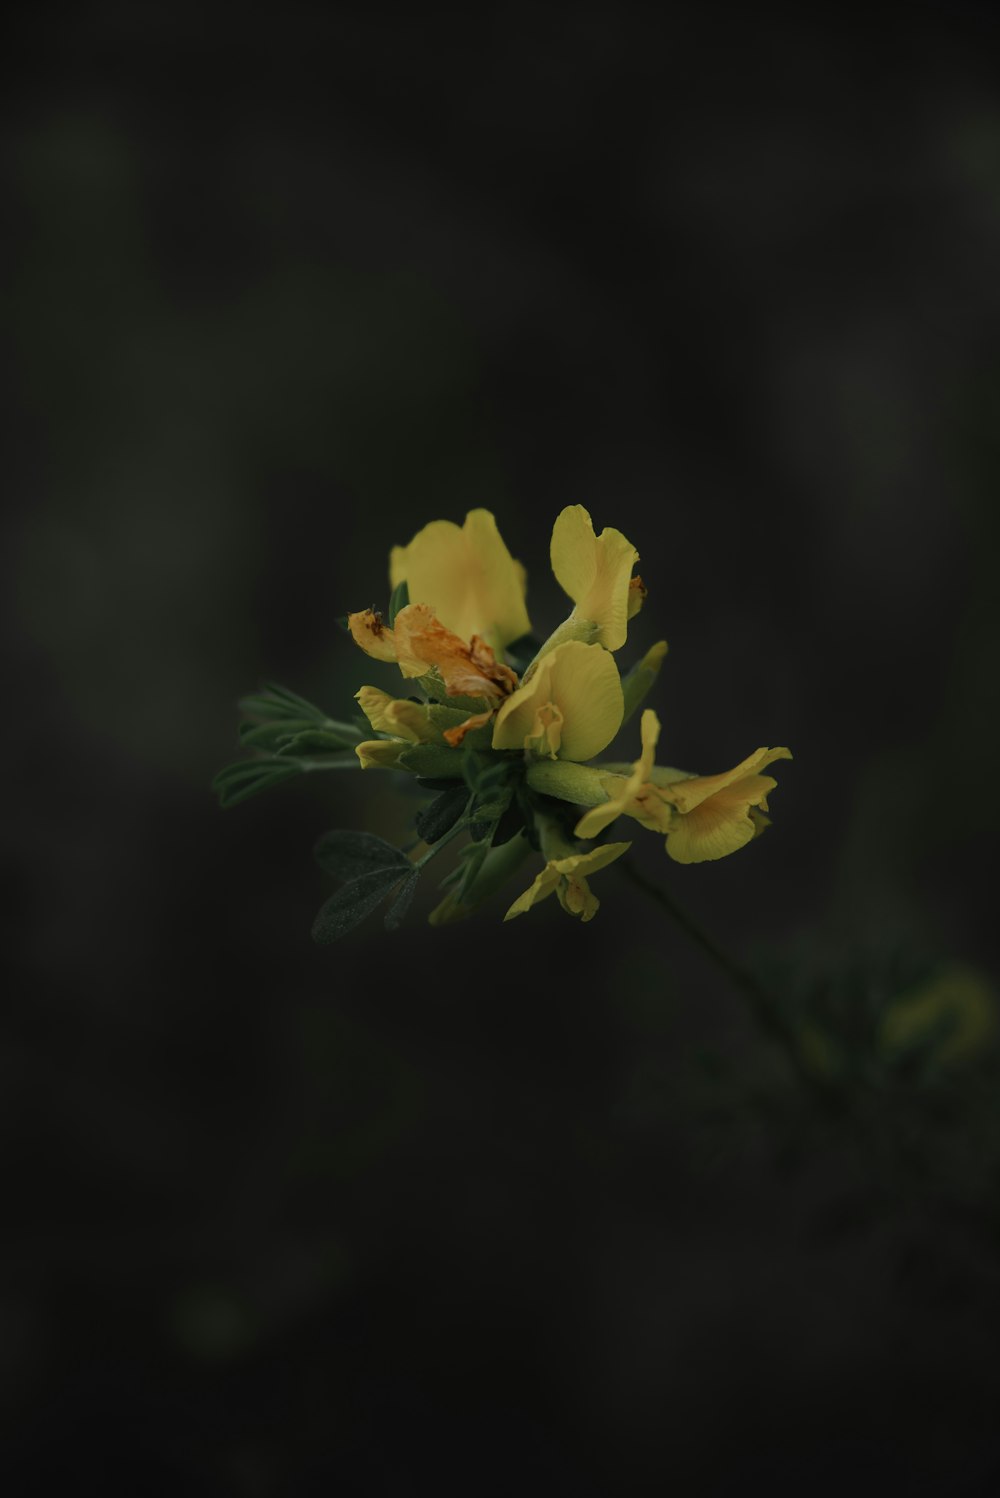 Un primer plano de una flor amarilla sobre un fondo negro